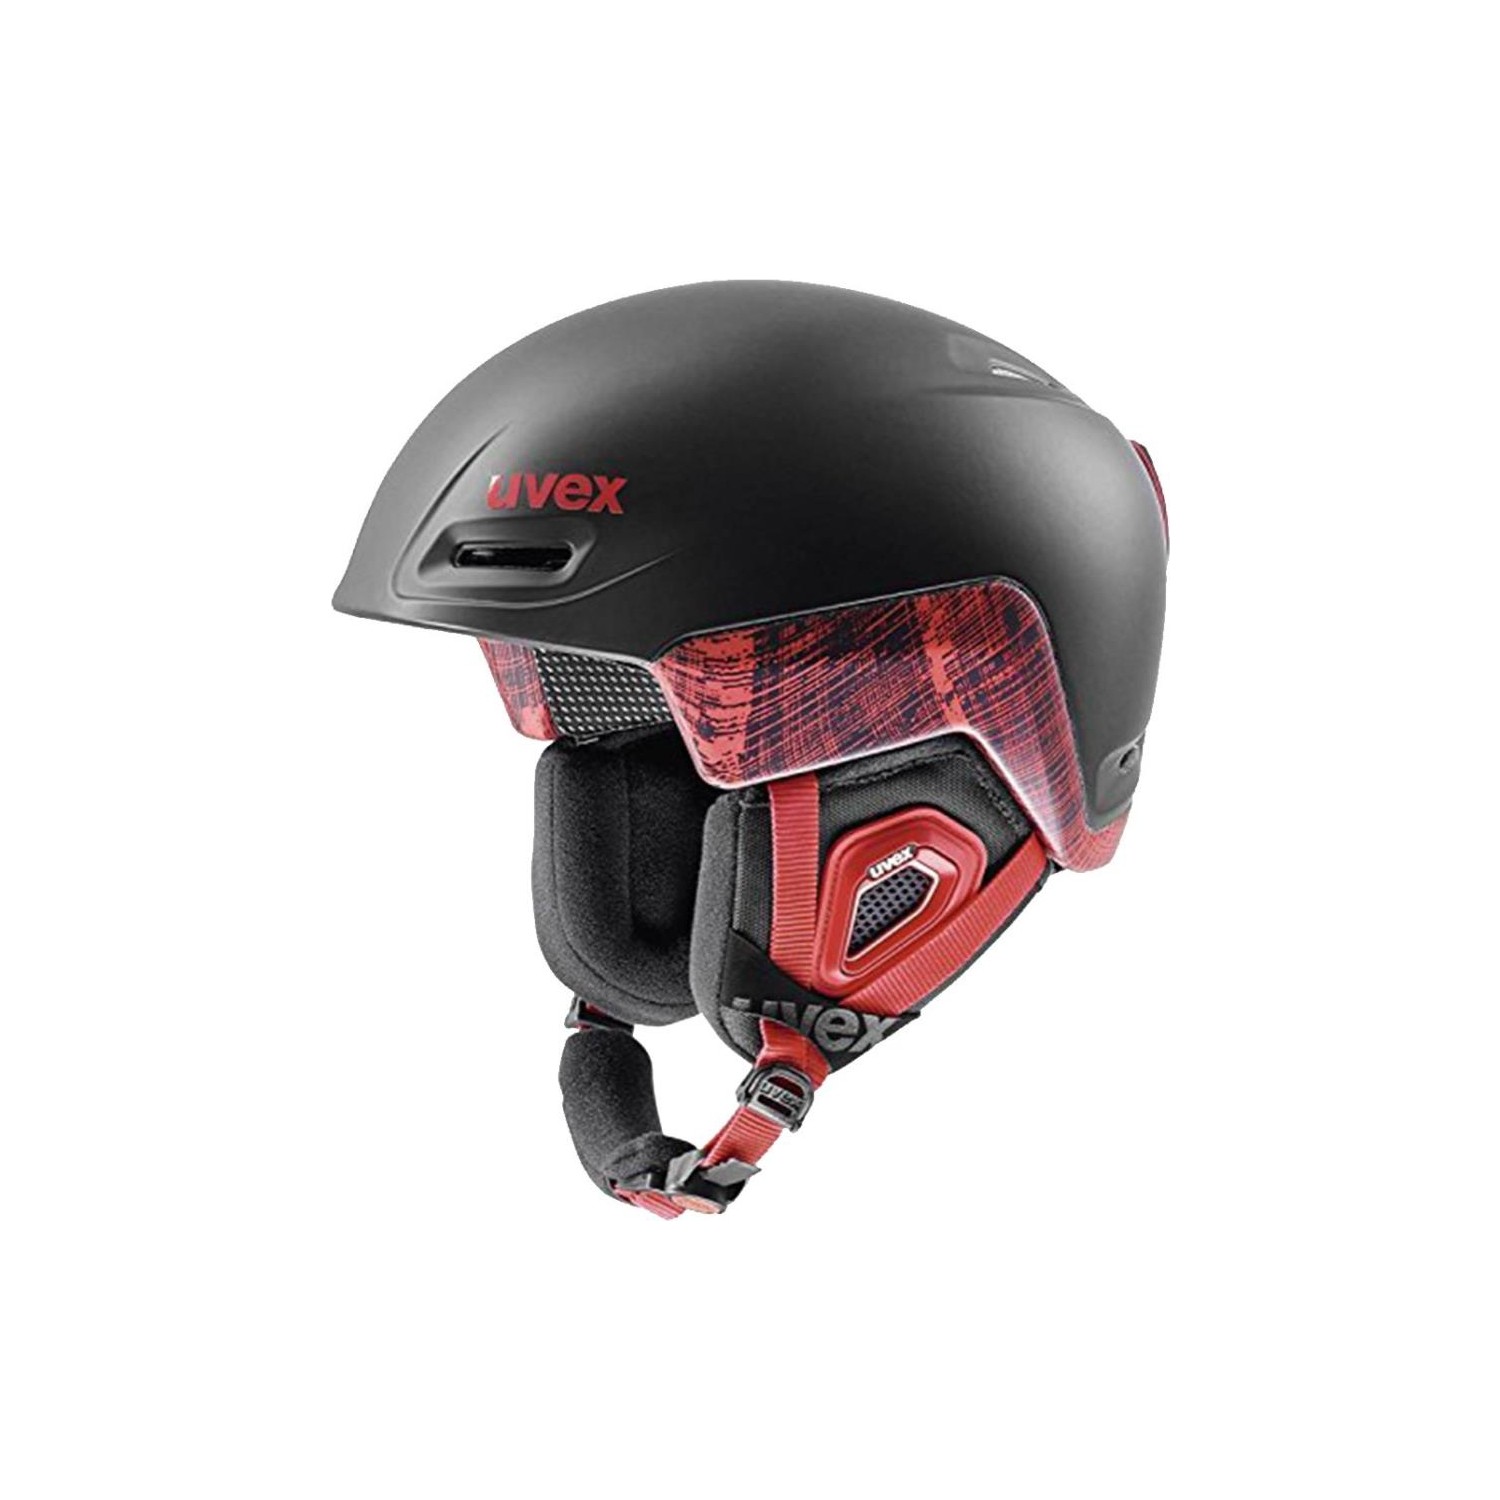 Uvex Jimm Octo+ Kayak Kaskı Siyah/Kırmızı Fiyatı